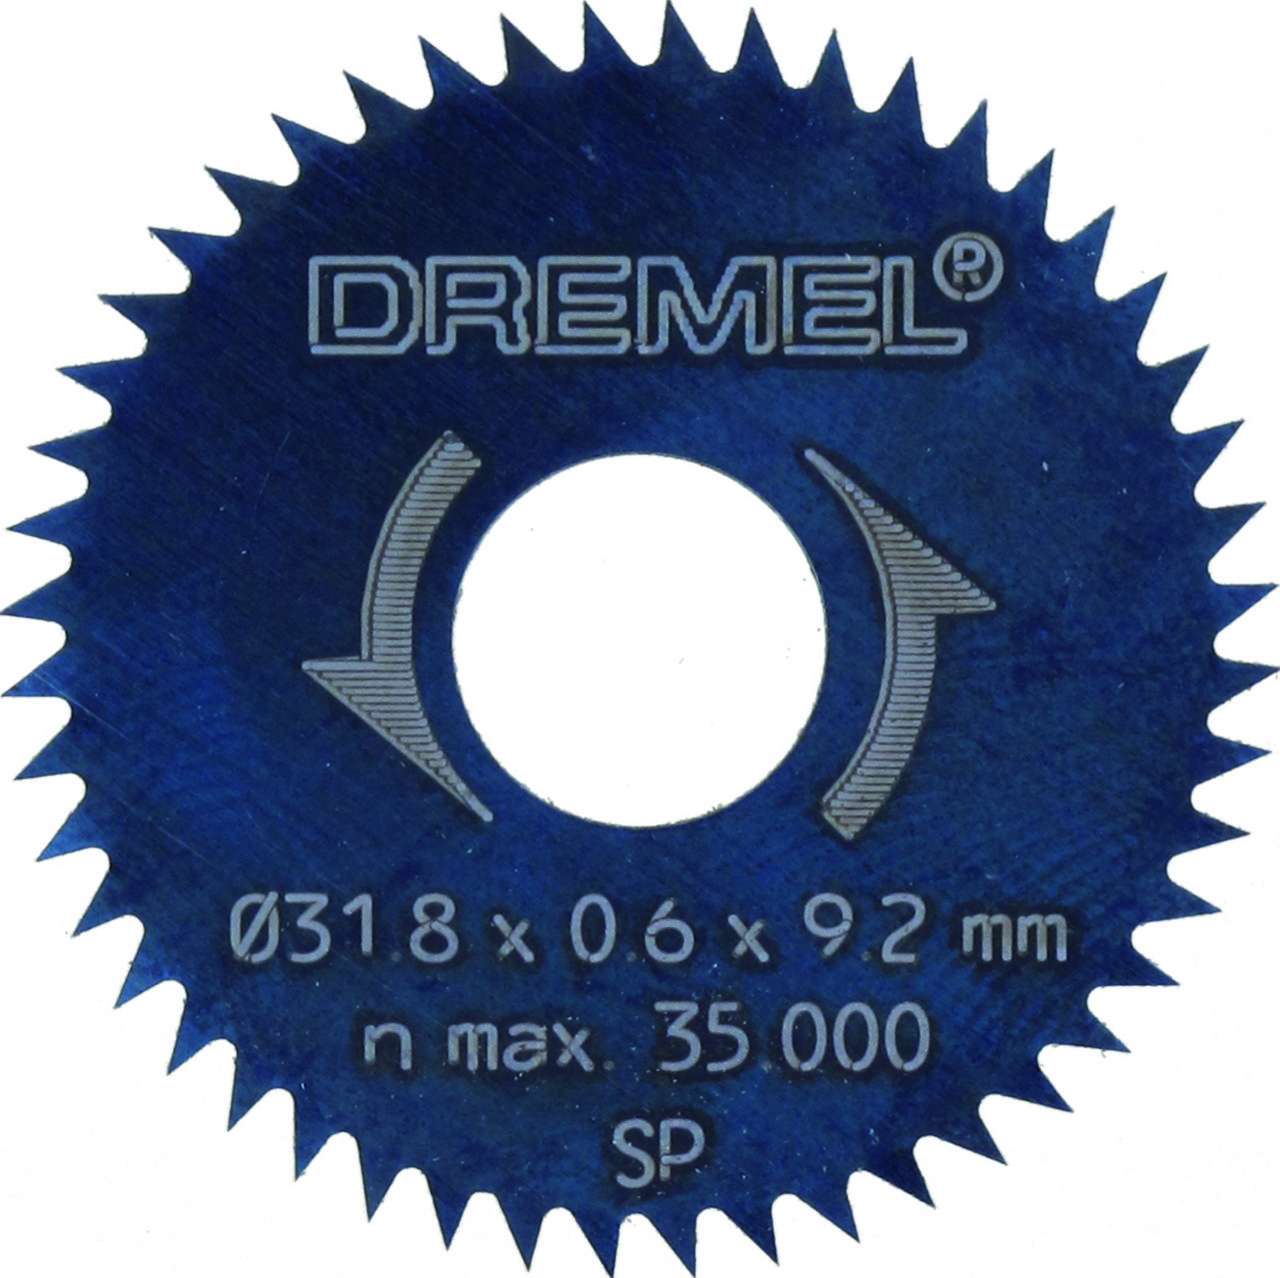 DREMEL® Yarık/Çapraz Kesim Bıçağı 31,8 mm (546)